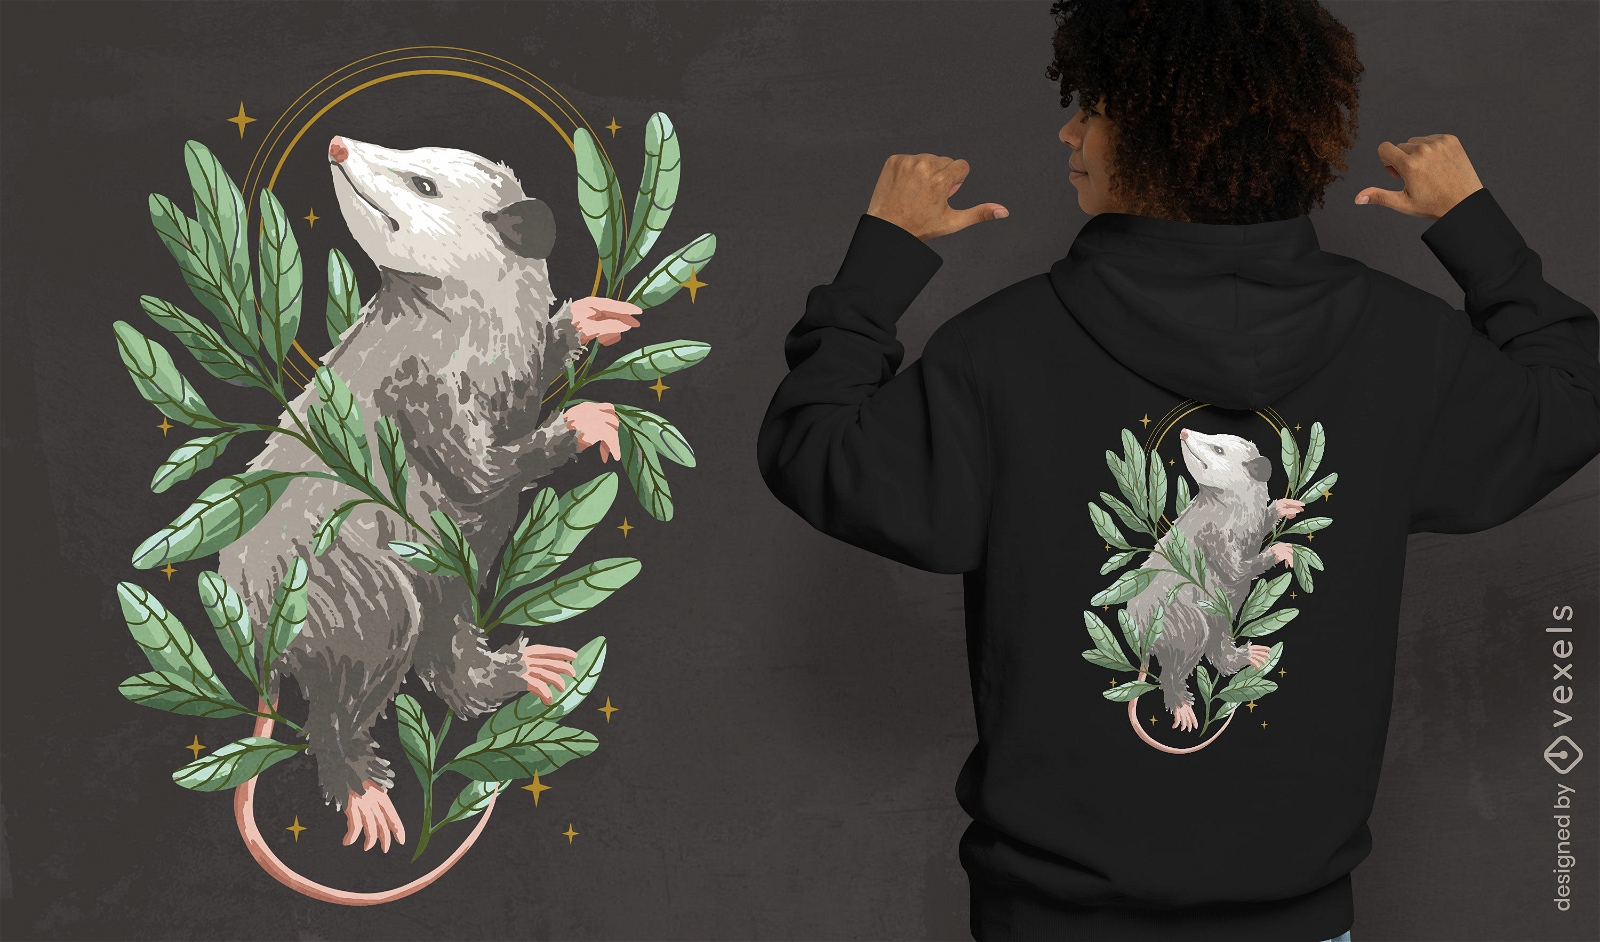 Opossum-Tier mit Blätter-T-Shirt-Design